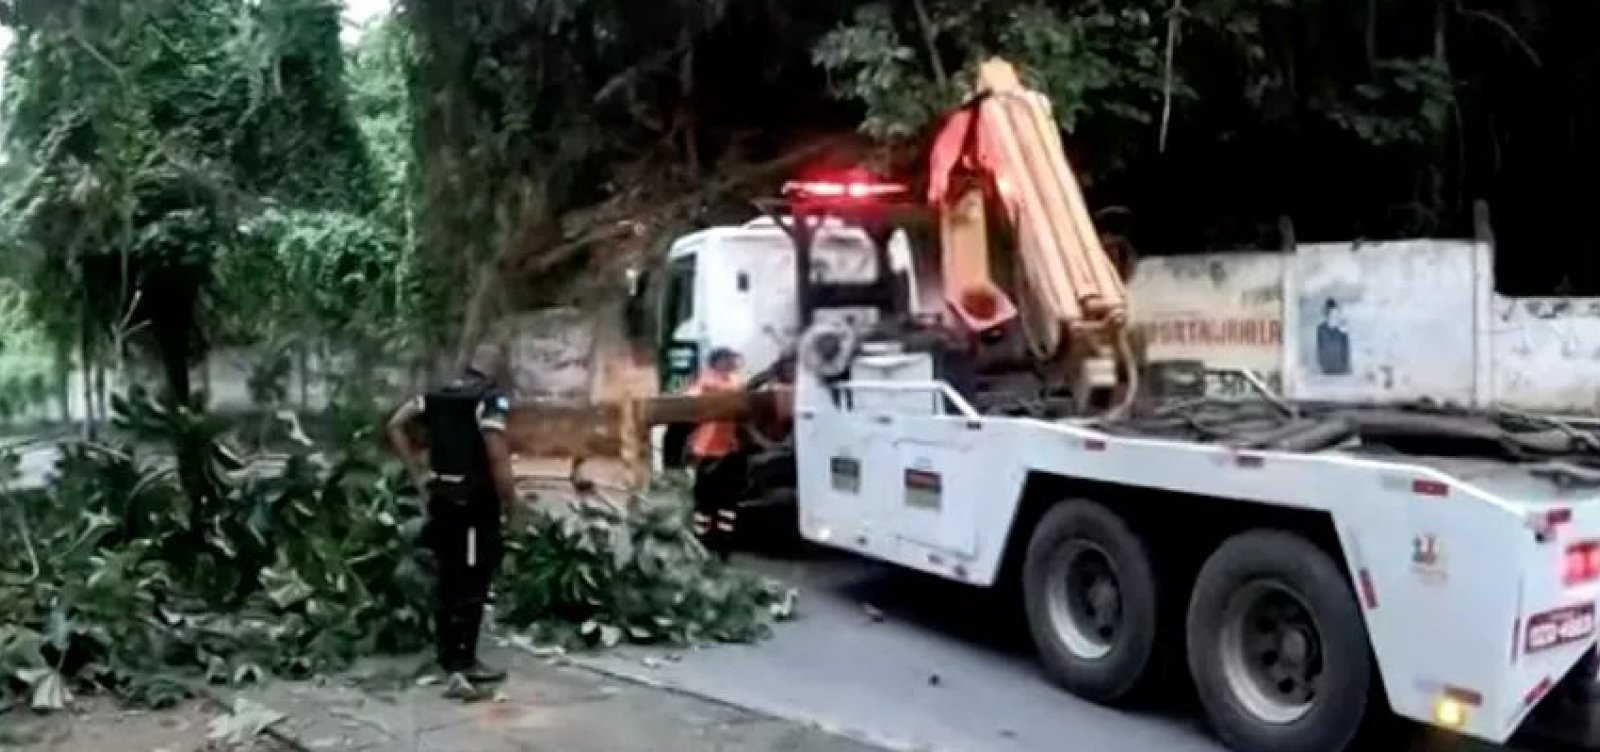 Fortes rajadas de vento na madrugada causam quedas de árvores em Salvador